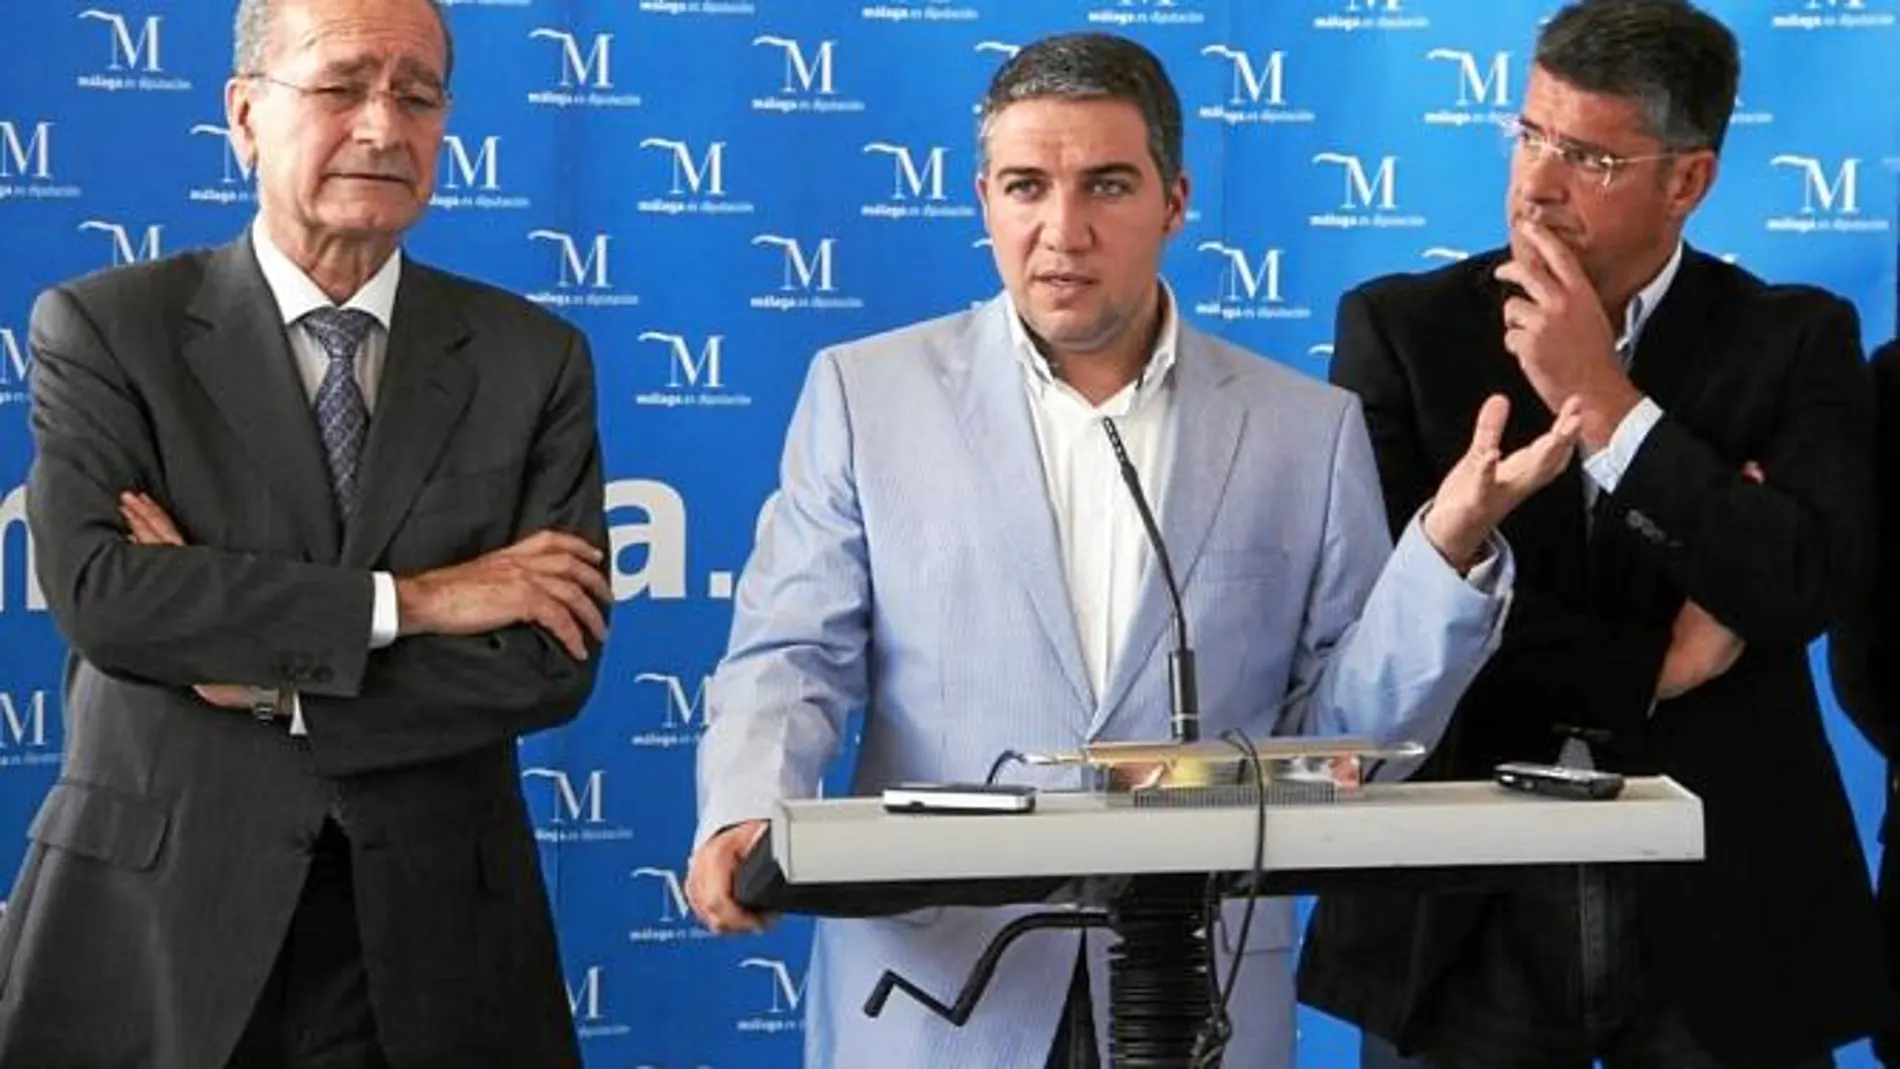 La Diputación de Málaga «adelgazará» al unificar todos sus organismos